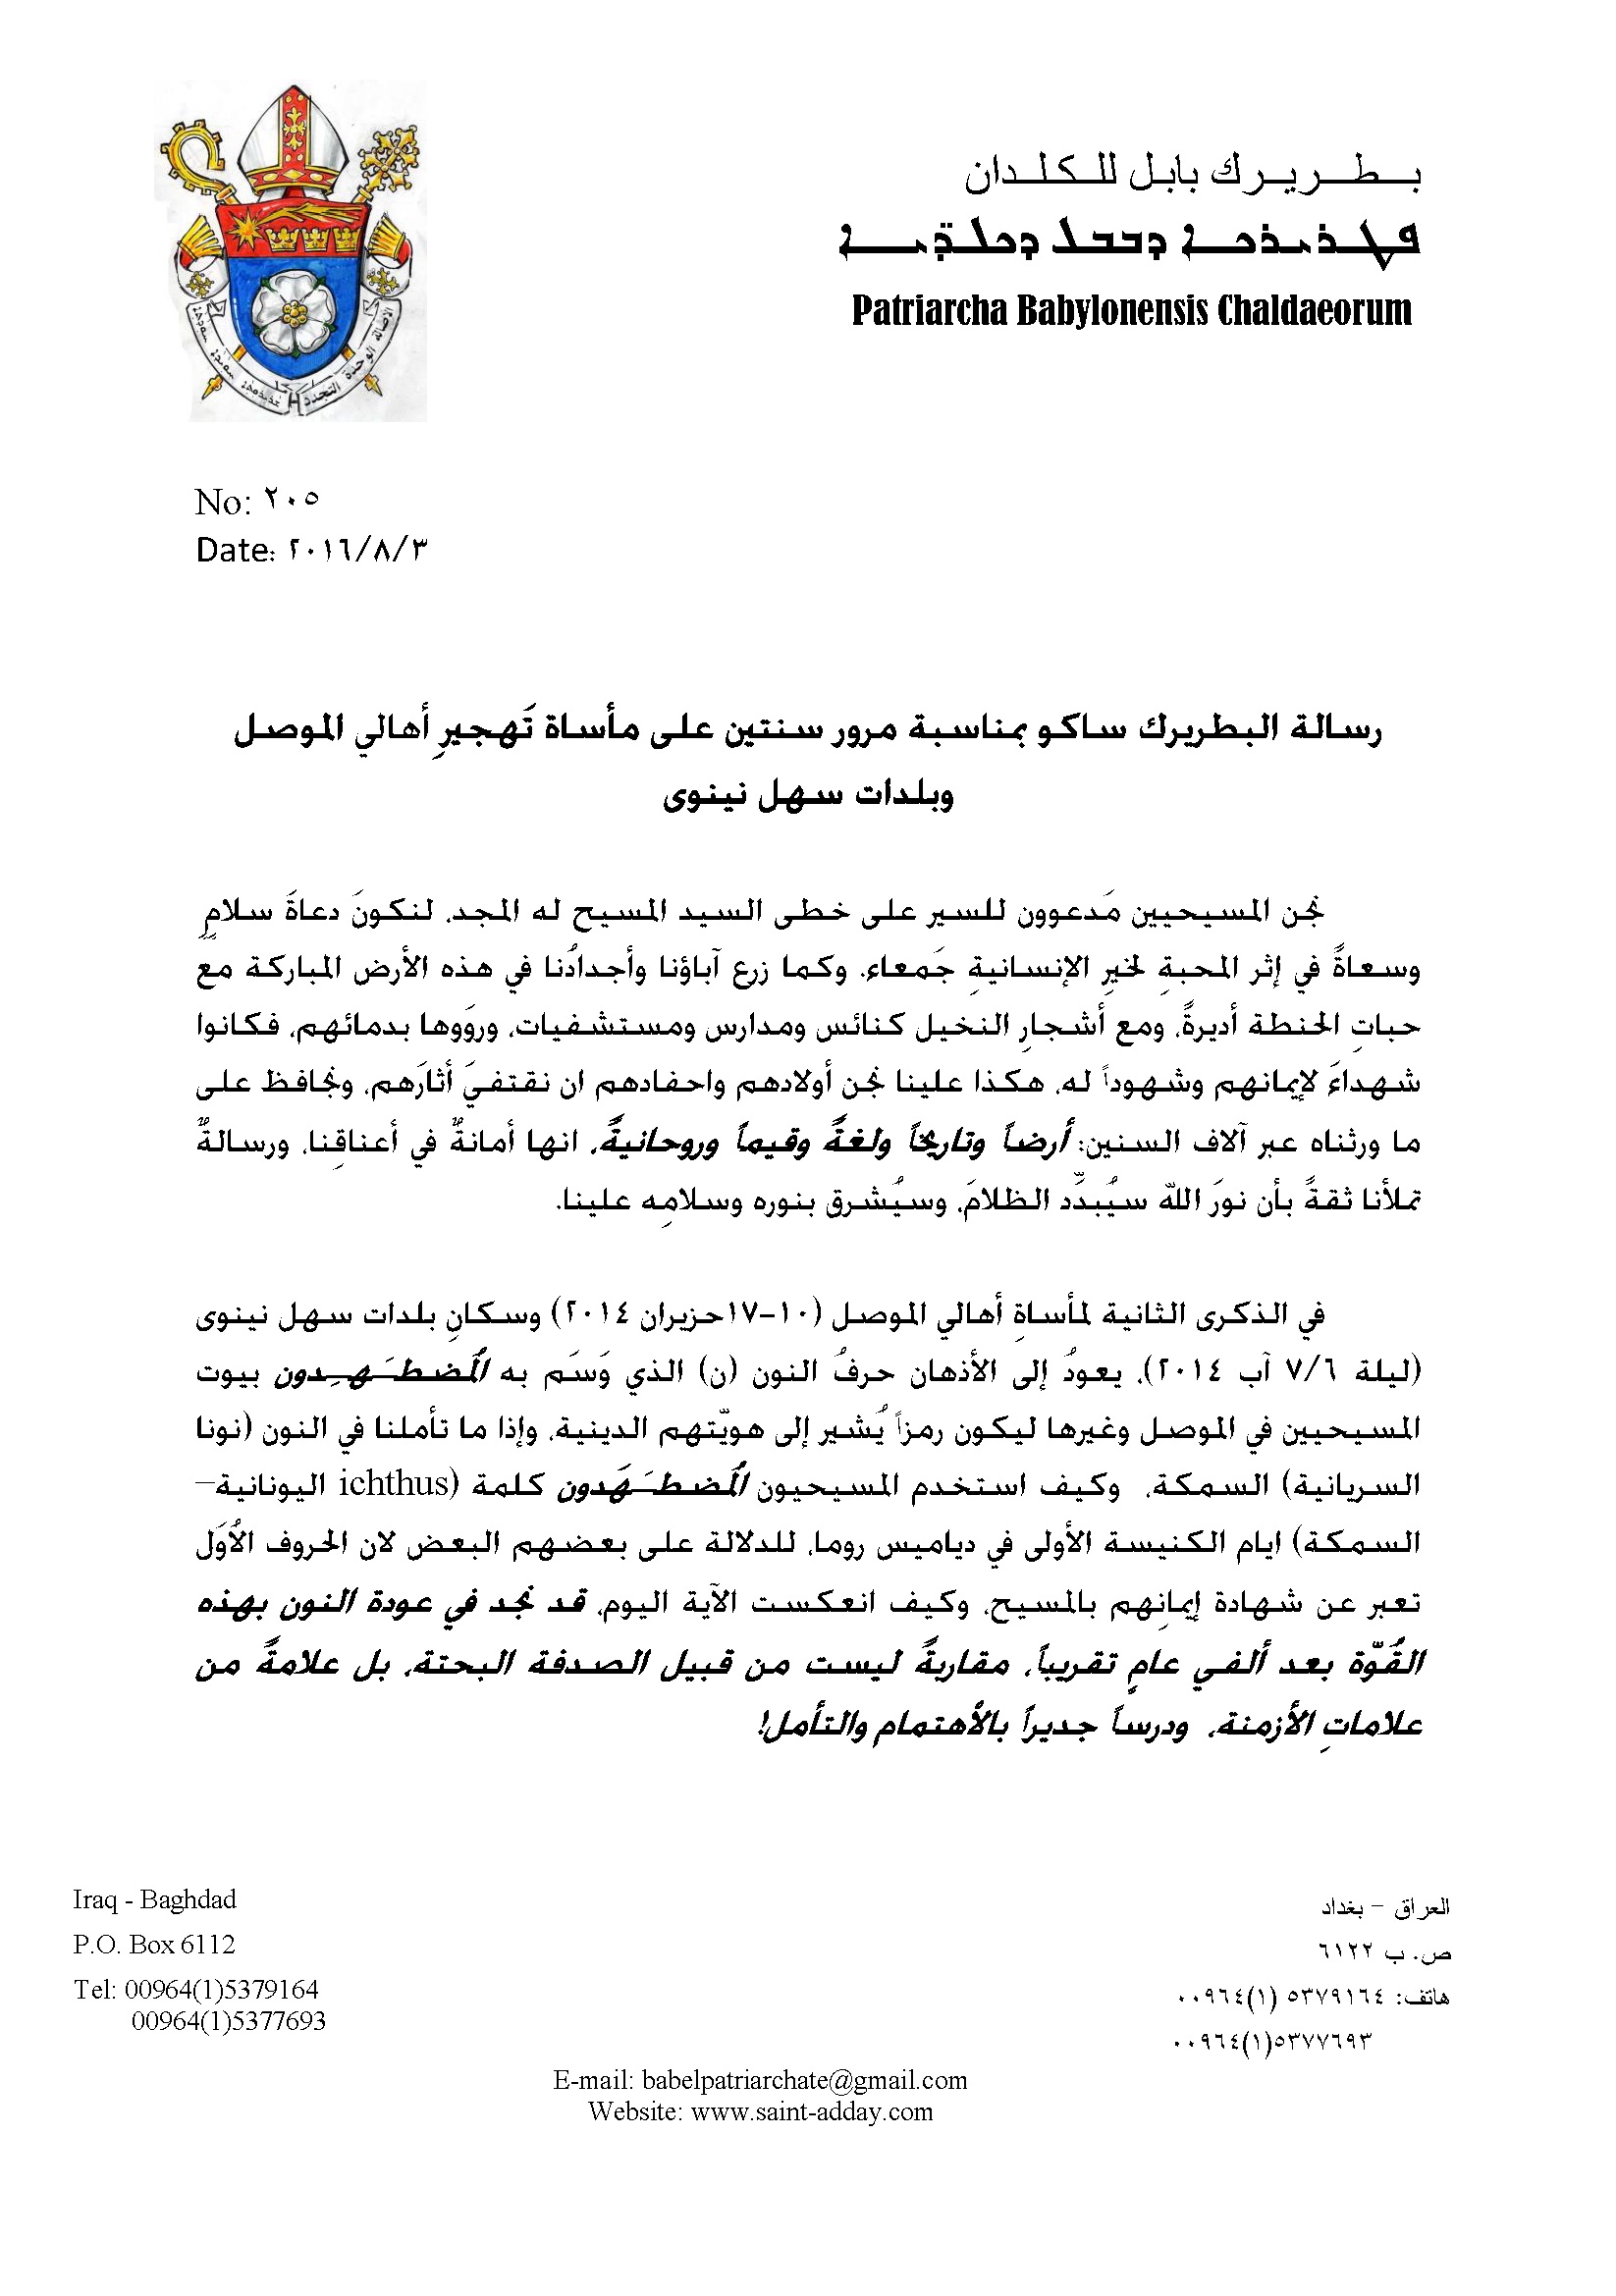 رسالة البطريرك ساكو بمناسبة مرور سنتين على مأساة تَهجير ِأهالي الموصل وبلدات سهل نينوى 001